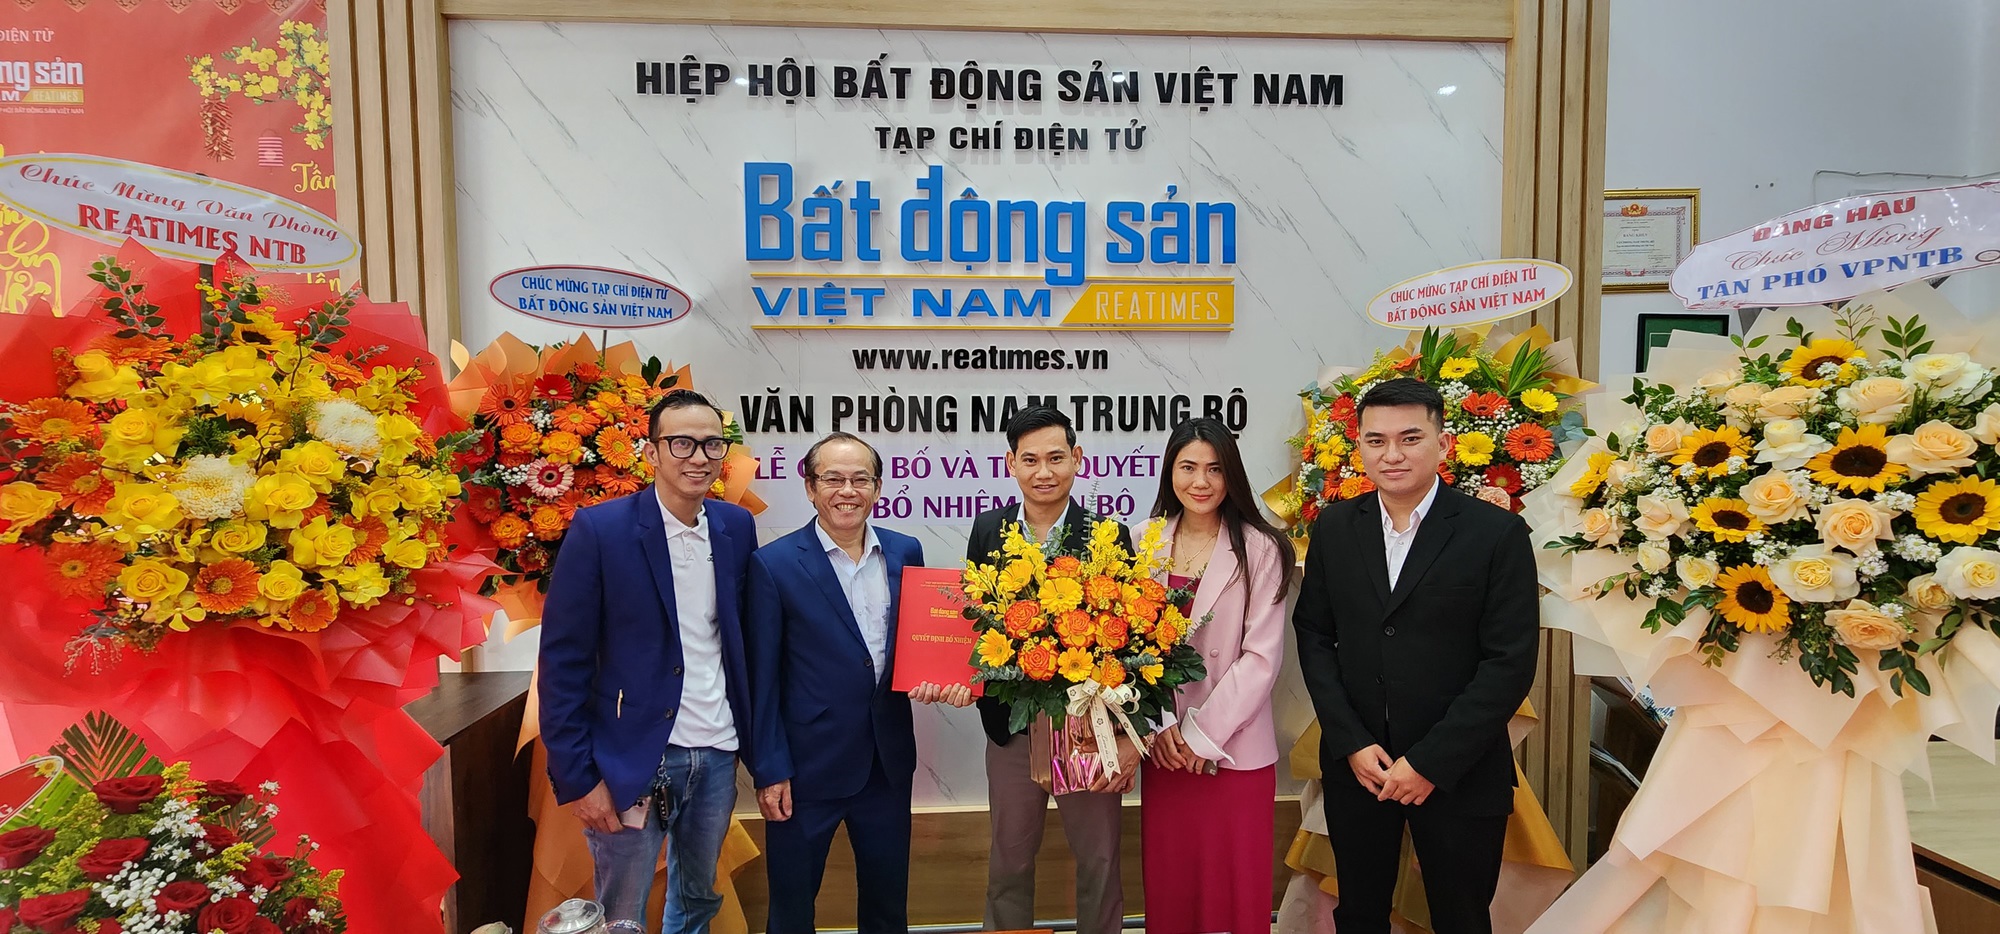 Công bố Quyết định bổ nhiệm Phó trưởng Văn phòng đại diện Tạp chí điện tử Bất động sản Việt Nam khu vực Nam Trung Bộ- Ảnh 2.